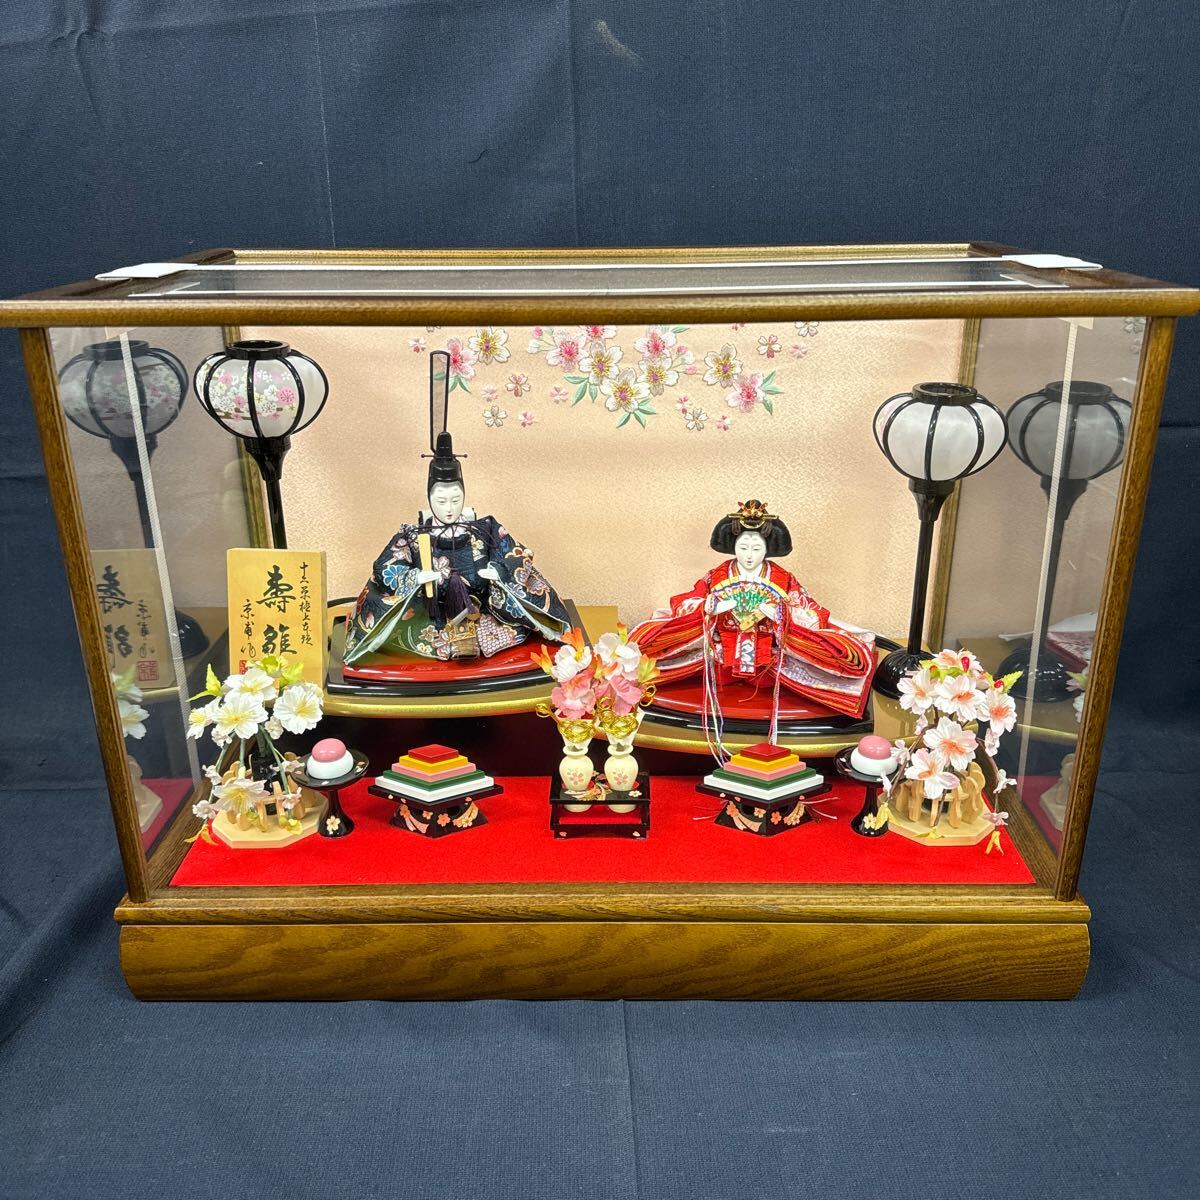 ◆Экспонирует куклы Хины в стеклянной витрине., 2 горчицы, Куклы котобуки, сделал Кёфу, деревянный, розовый, кимоно с цветочным узором, освещение снежной пещеры, Фестиваль кукол, Хина куклы, Персиковый фестиваль, интерьер 158-38, время года, Ежегодное мероприятие, Фестиваль кукол, Хина кукла